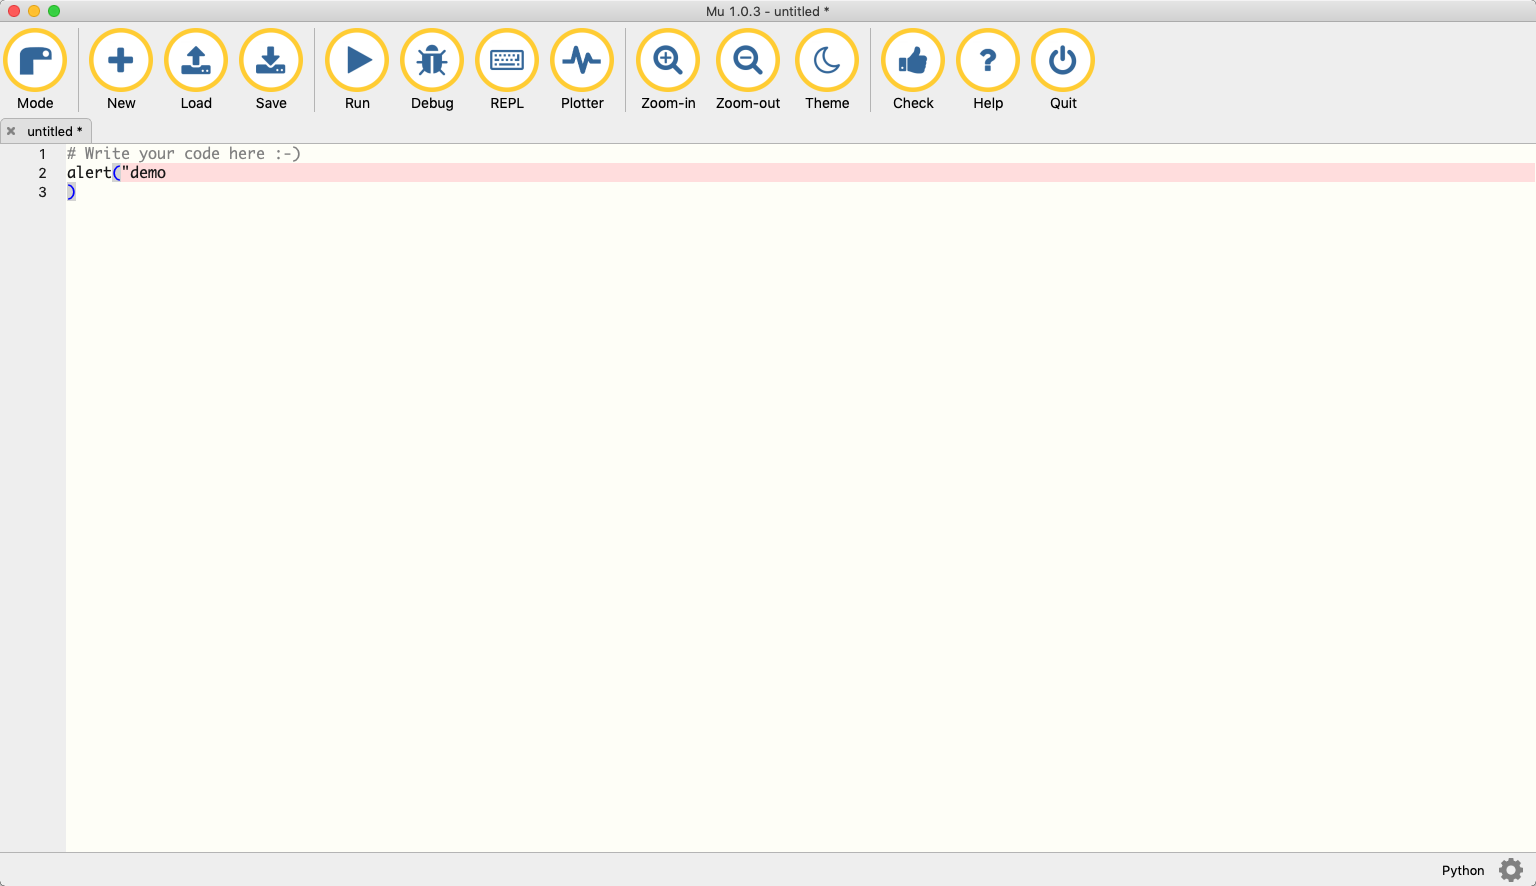 mu-editor 1.0 : Main Window